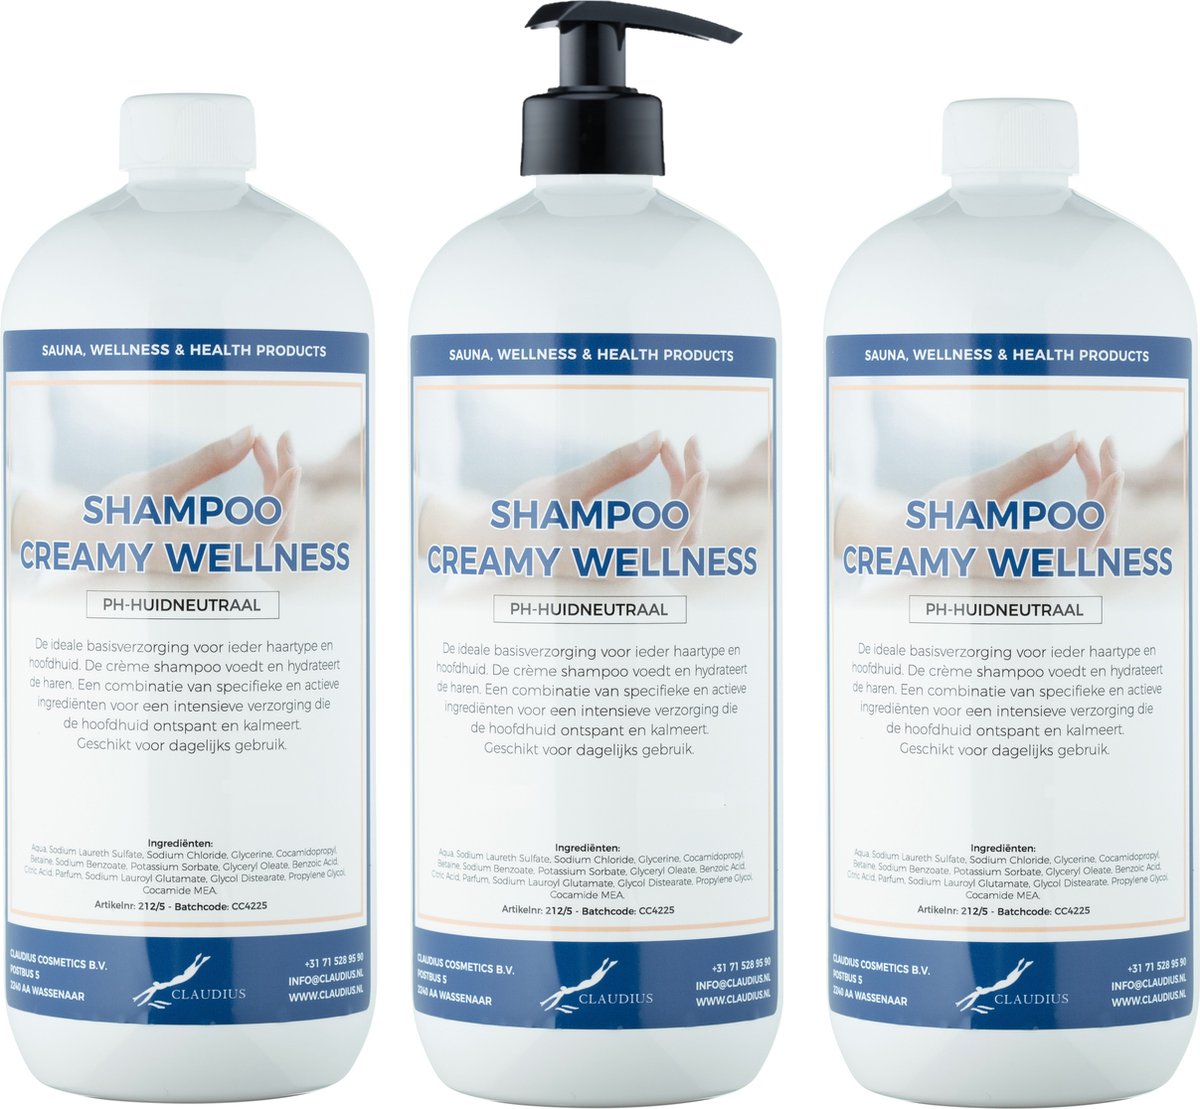 Shampoo Creamy Wellness 1 Liter - set van 3 stuks - met gratis pomp